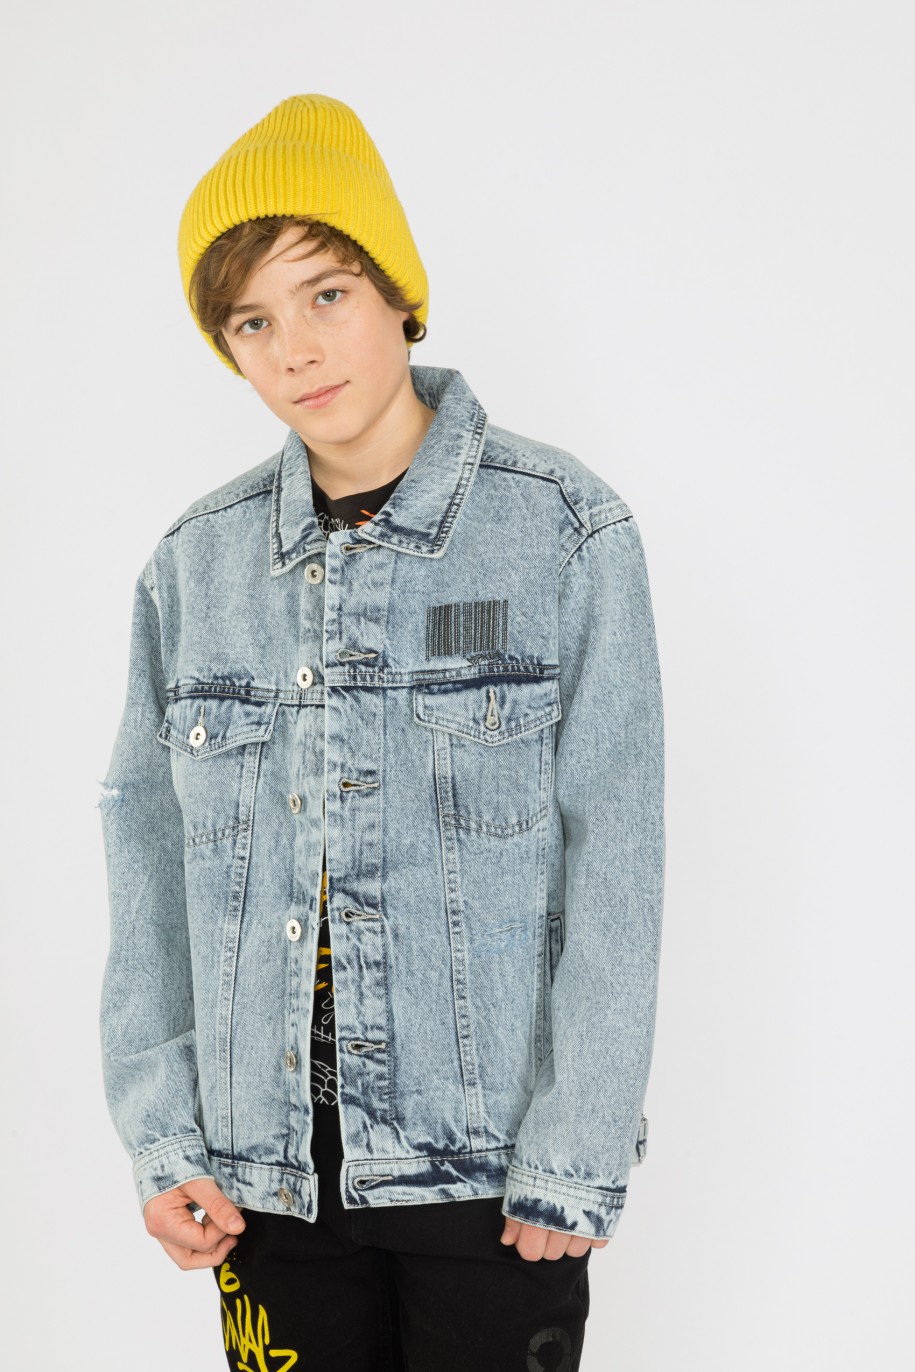 Niebieska kurtka jeansowa dla chłopaka z napisami graffiti na plecach - 33658